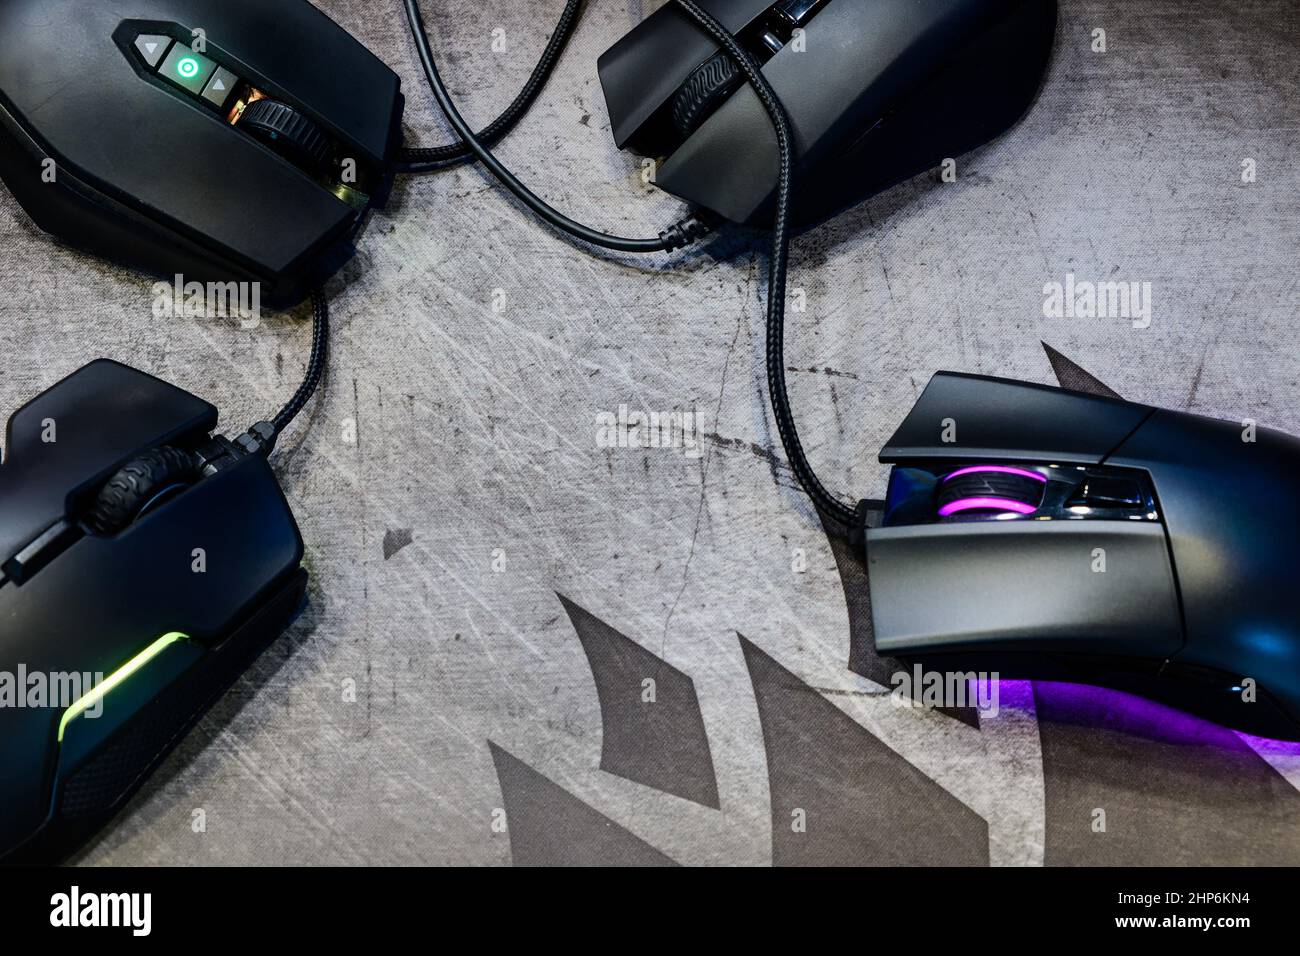 Gros plan de souris de jeu moderne sur couleur noire avec voyant LED RVB montrer l'état sur le mode de travail placer sur le tapis de la souris de jeu sur la vue de dessus, e-sport Banque D'Images